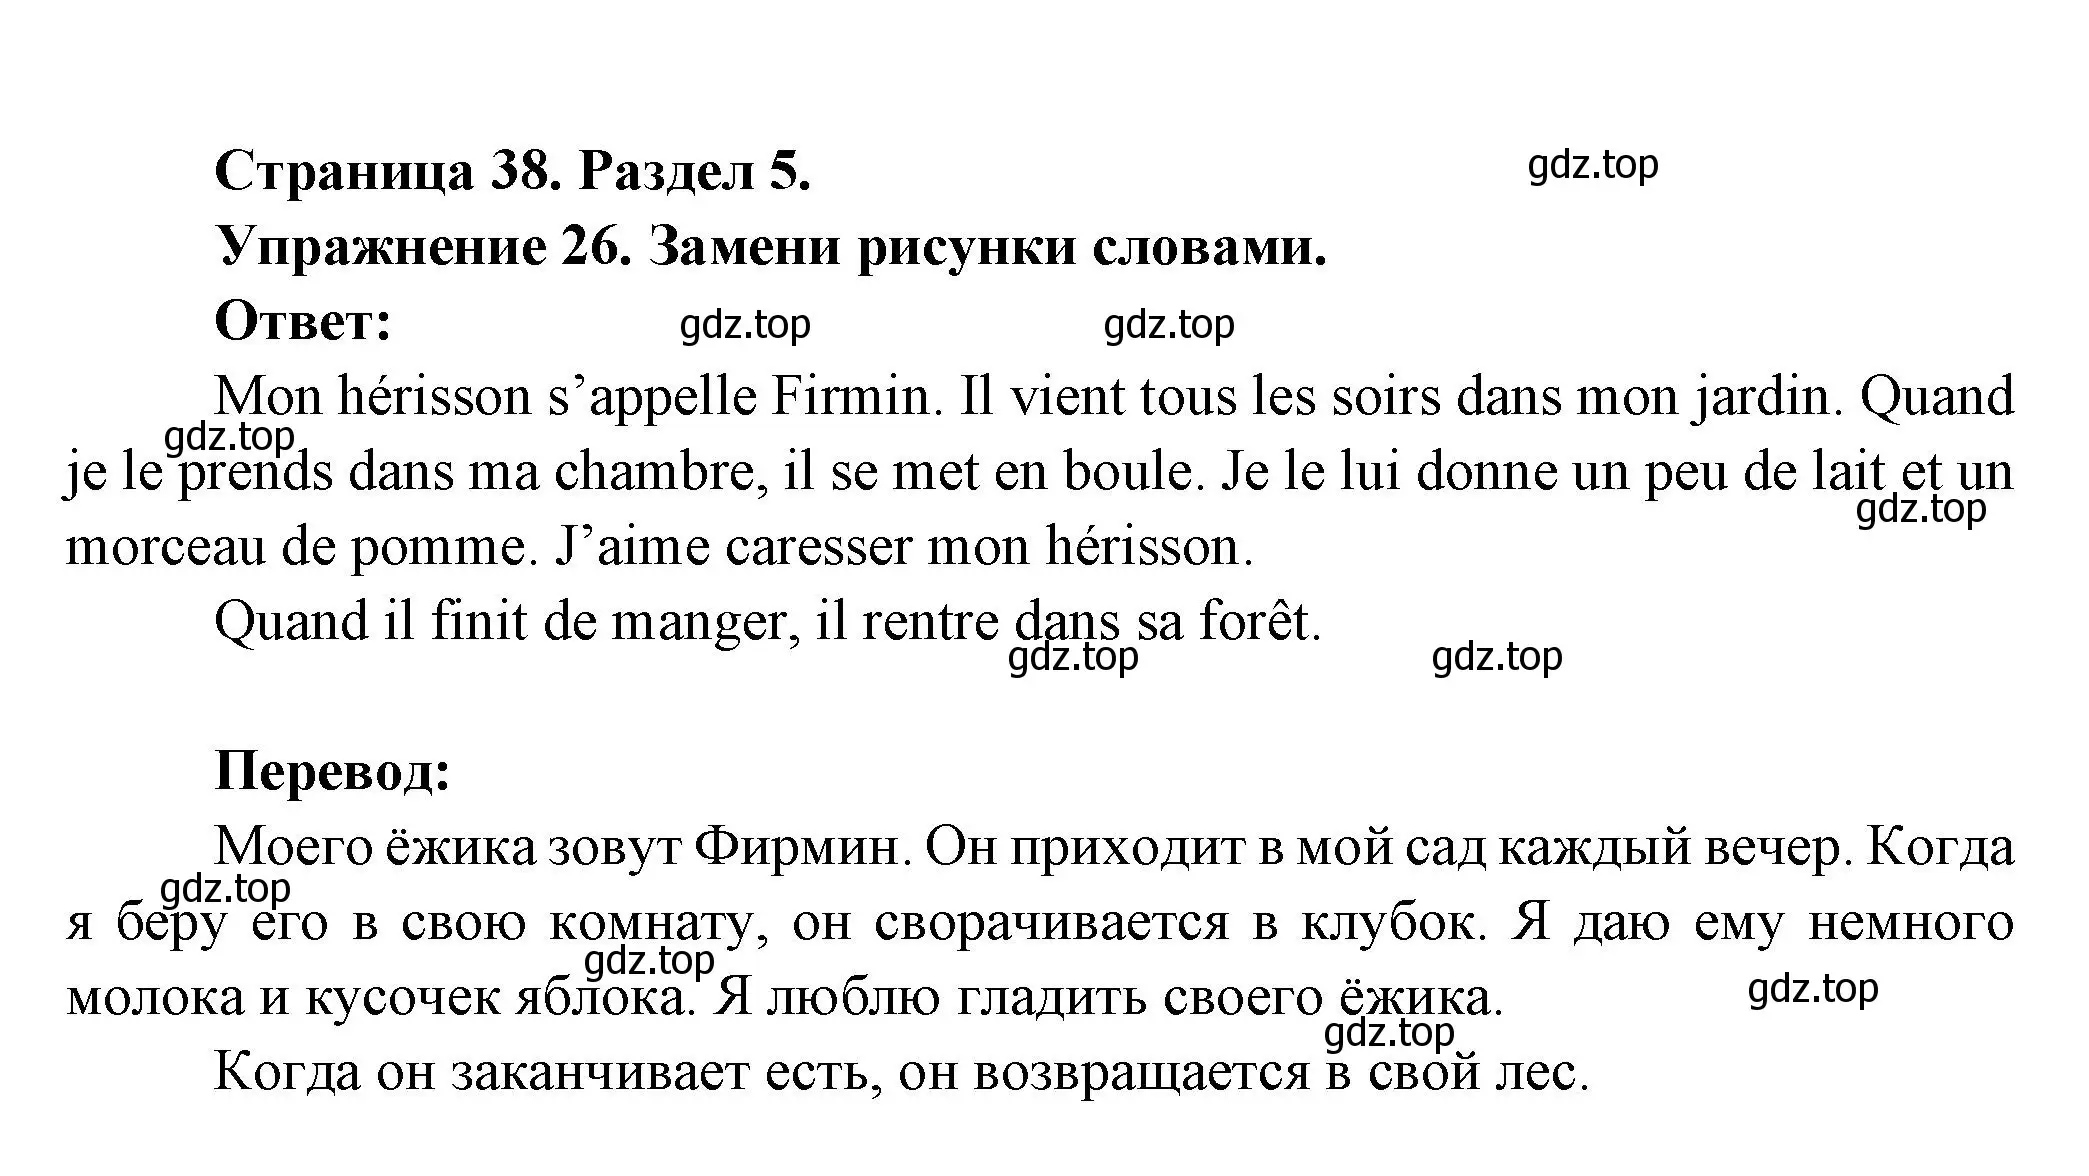 Решение номер 26 (страница 38) гдз по французскому языку 5 класс Береговская, Белосельская, учебник 2 часть